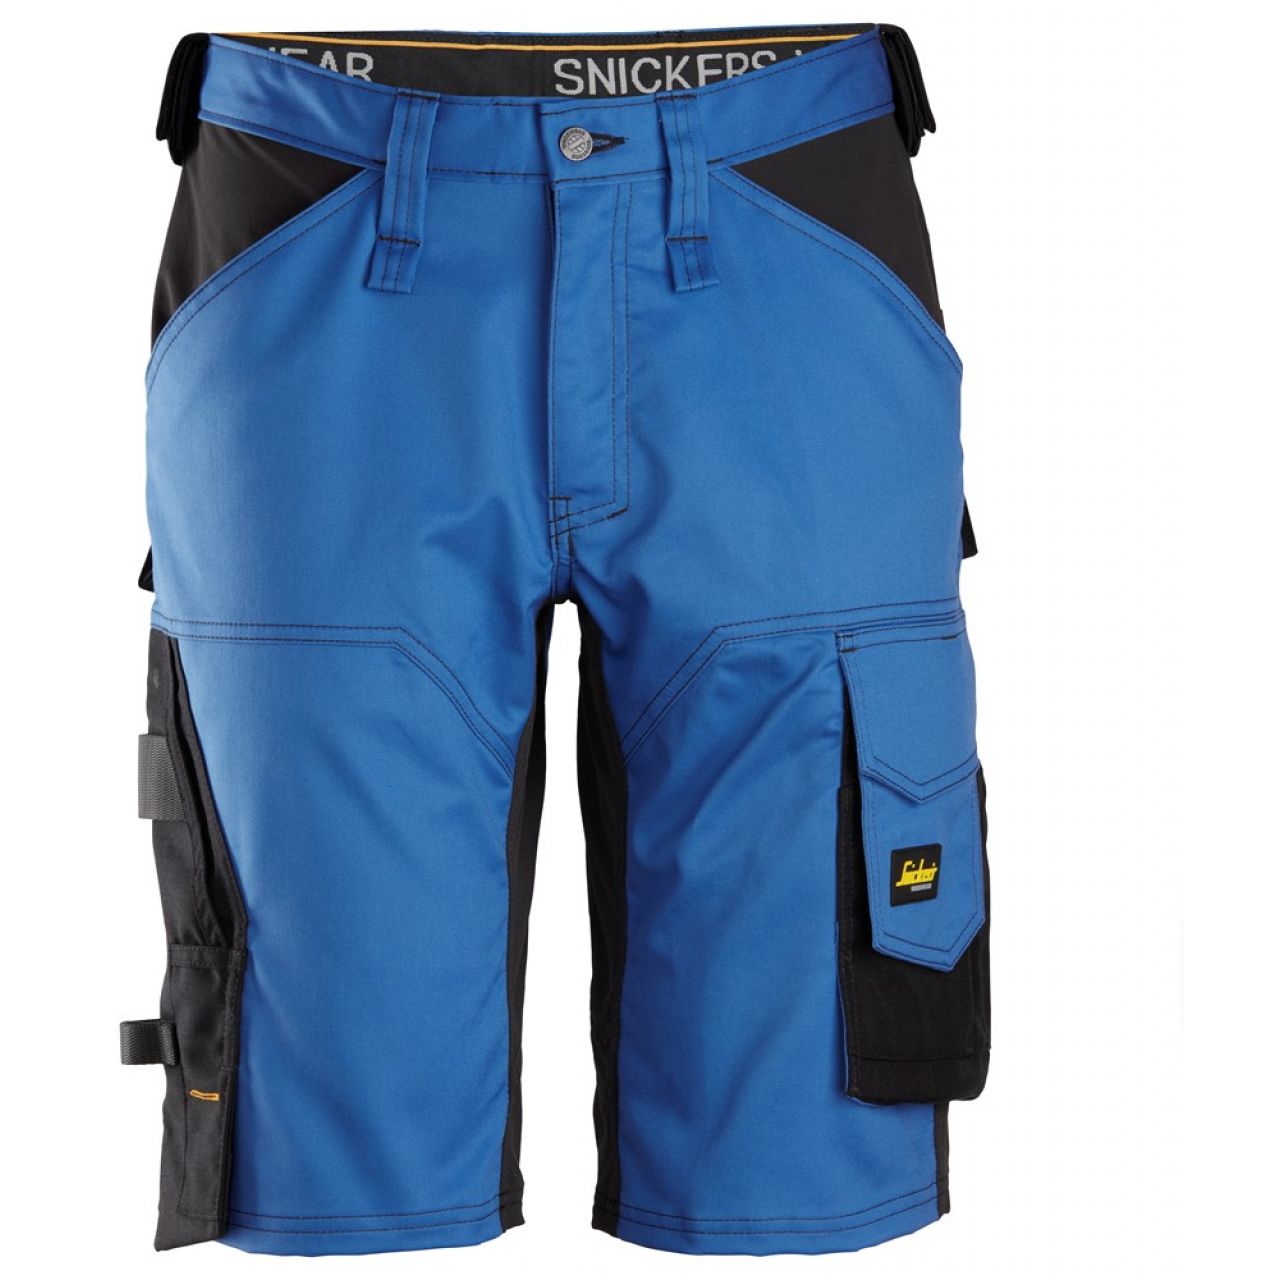 Pantalon corto elastico holgado AllroundWork azul-negro talla 060